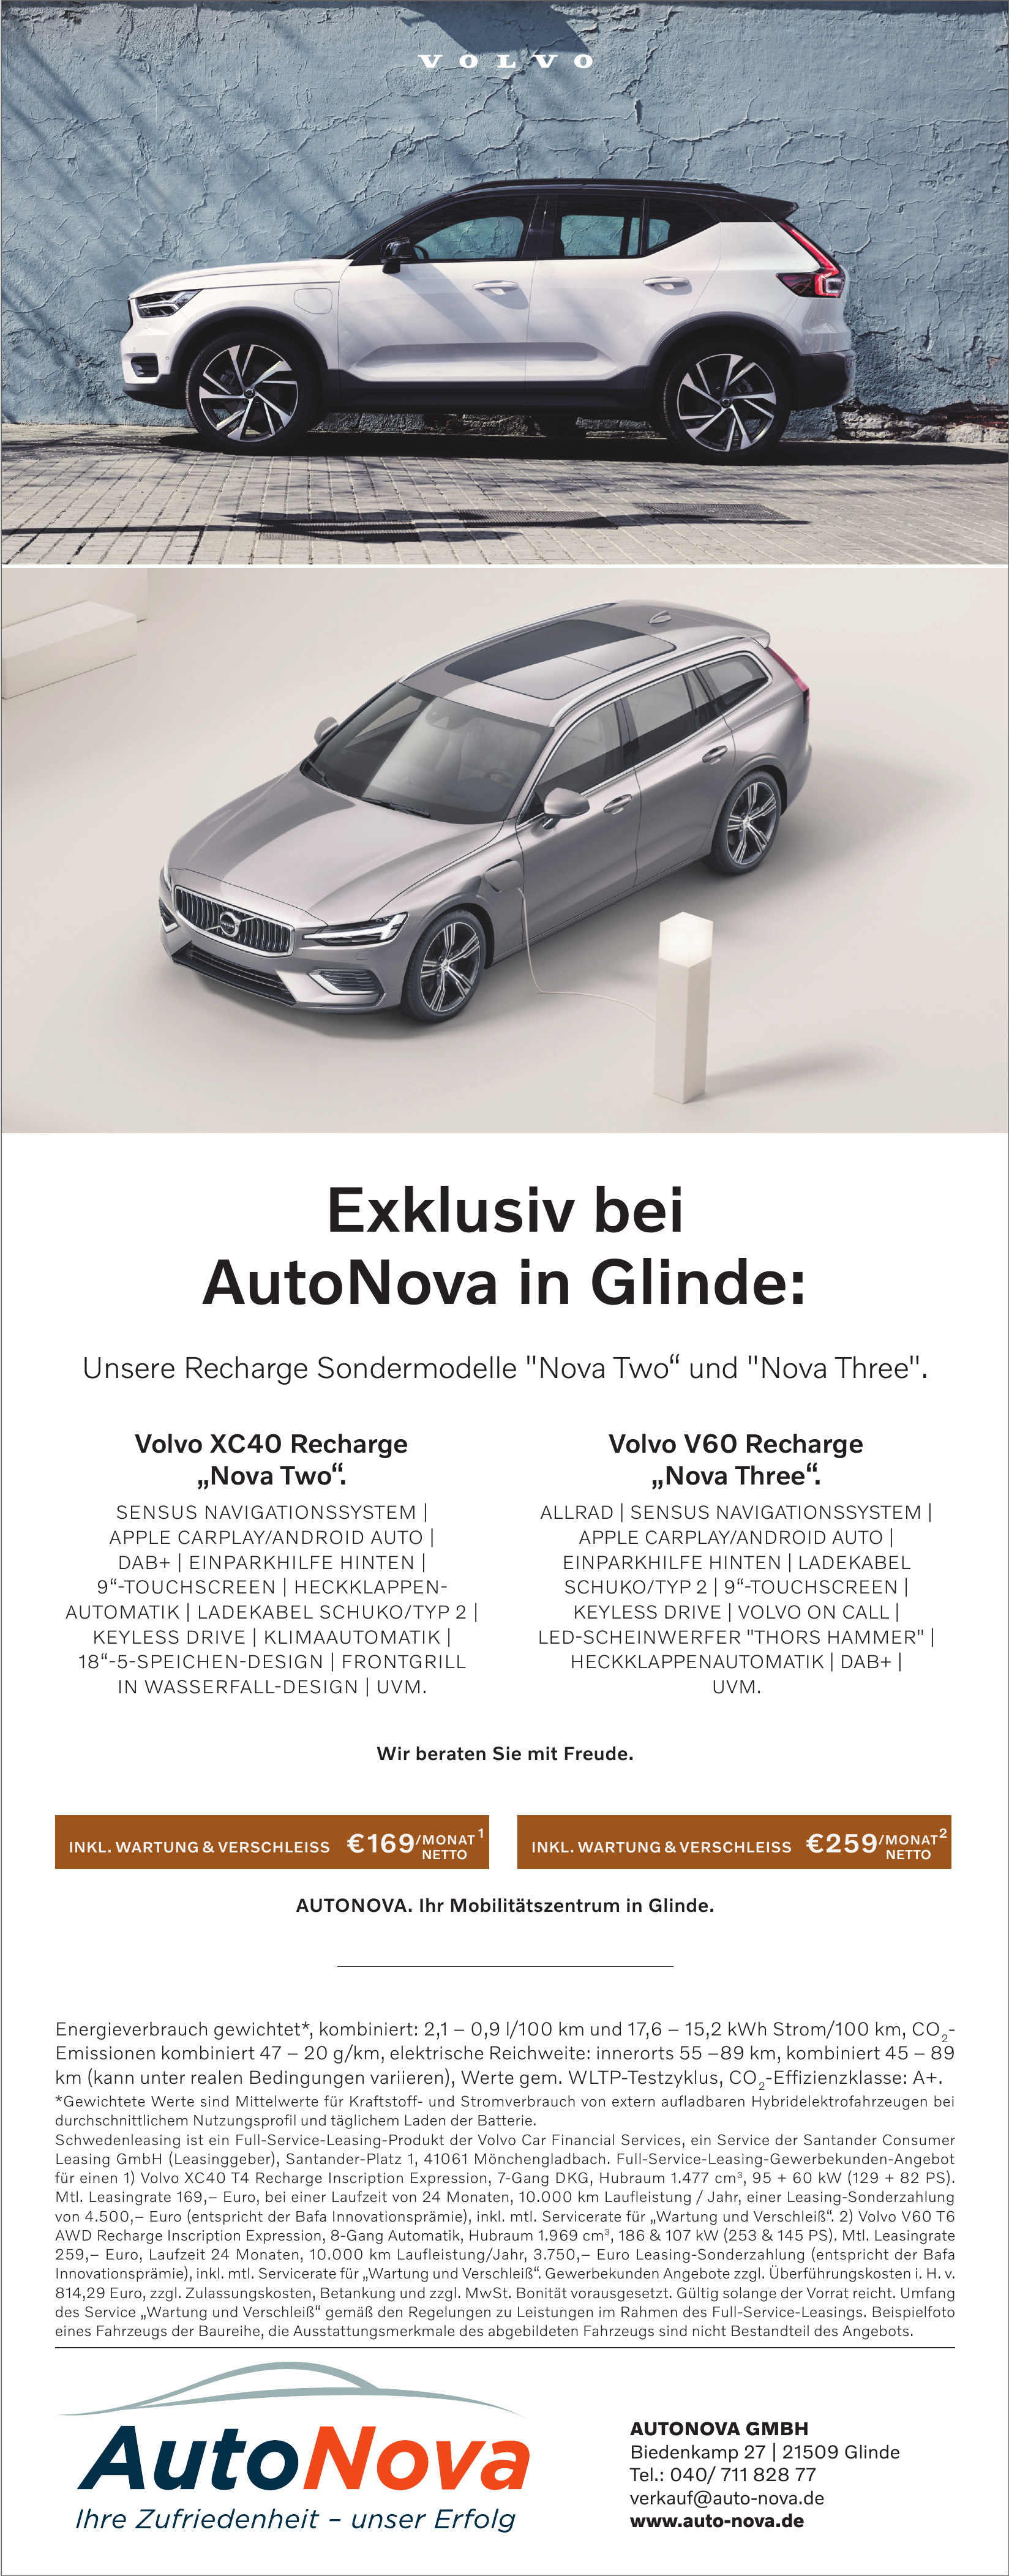 Autonova GmbH